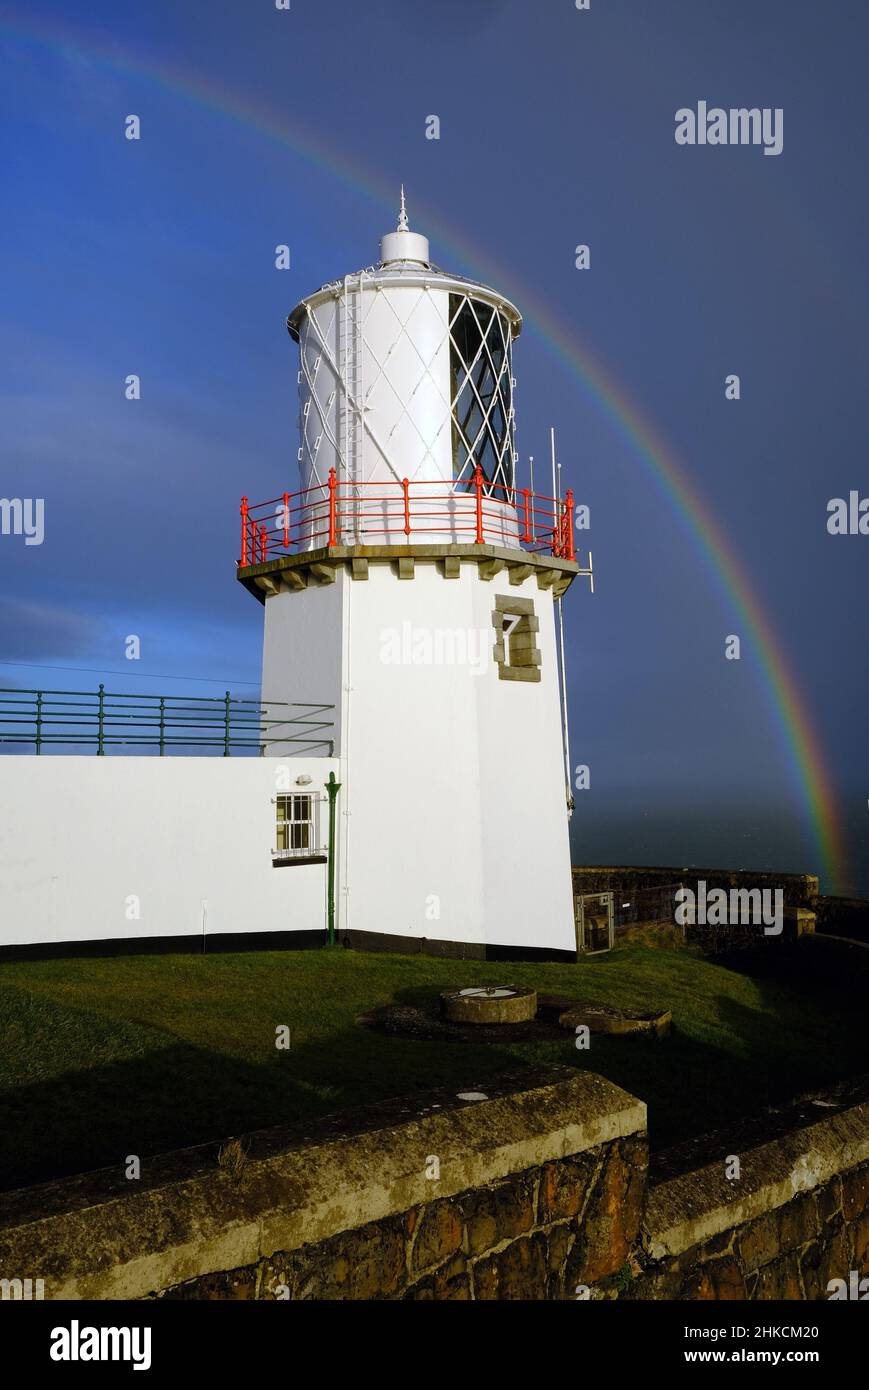 Rainbow at Blackhead Lighthouse, Northern Ireland. Stock Photo